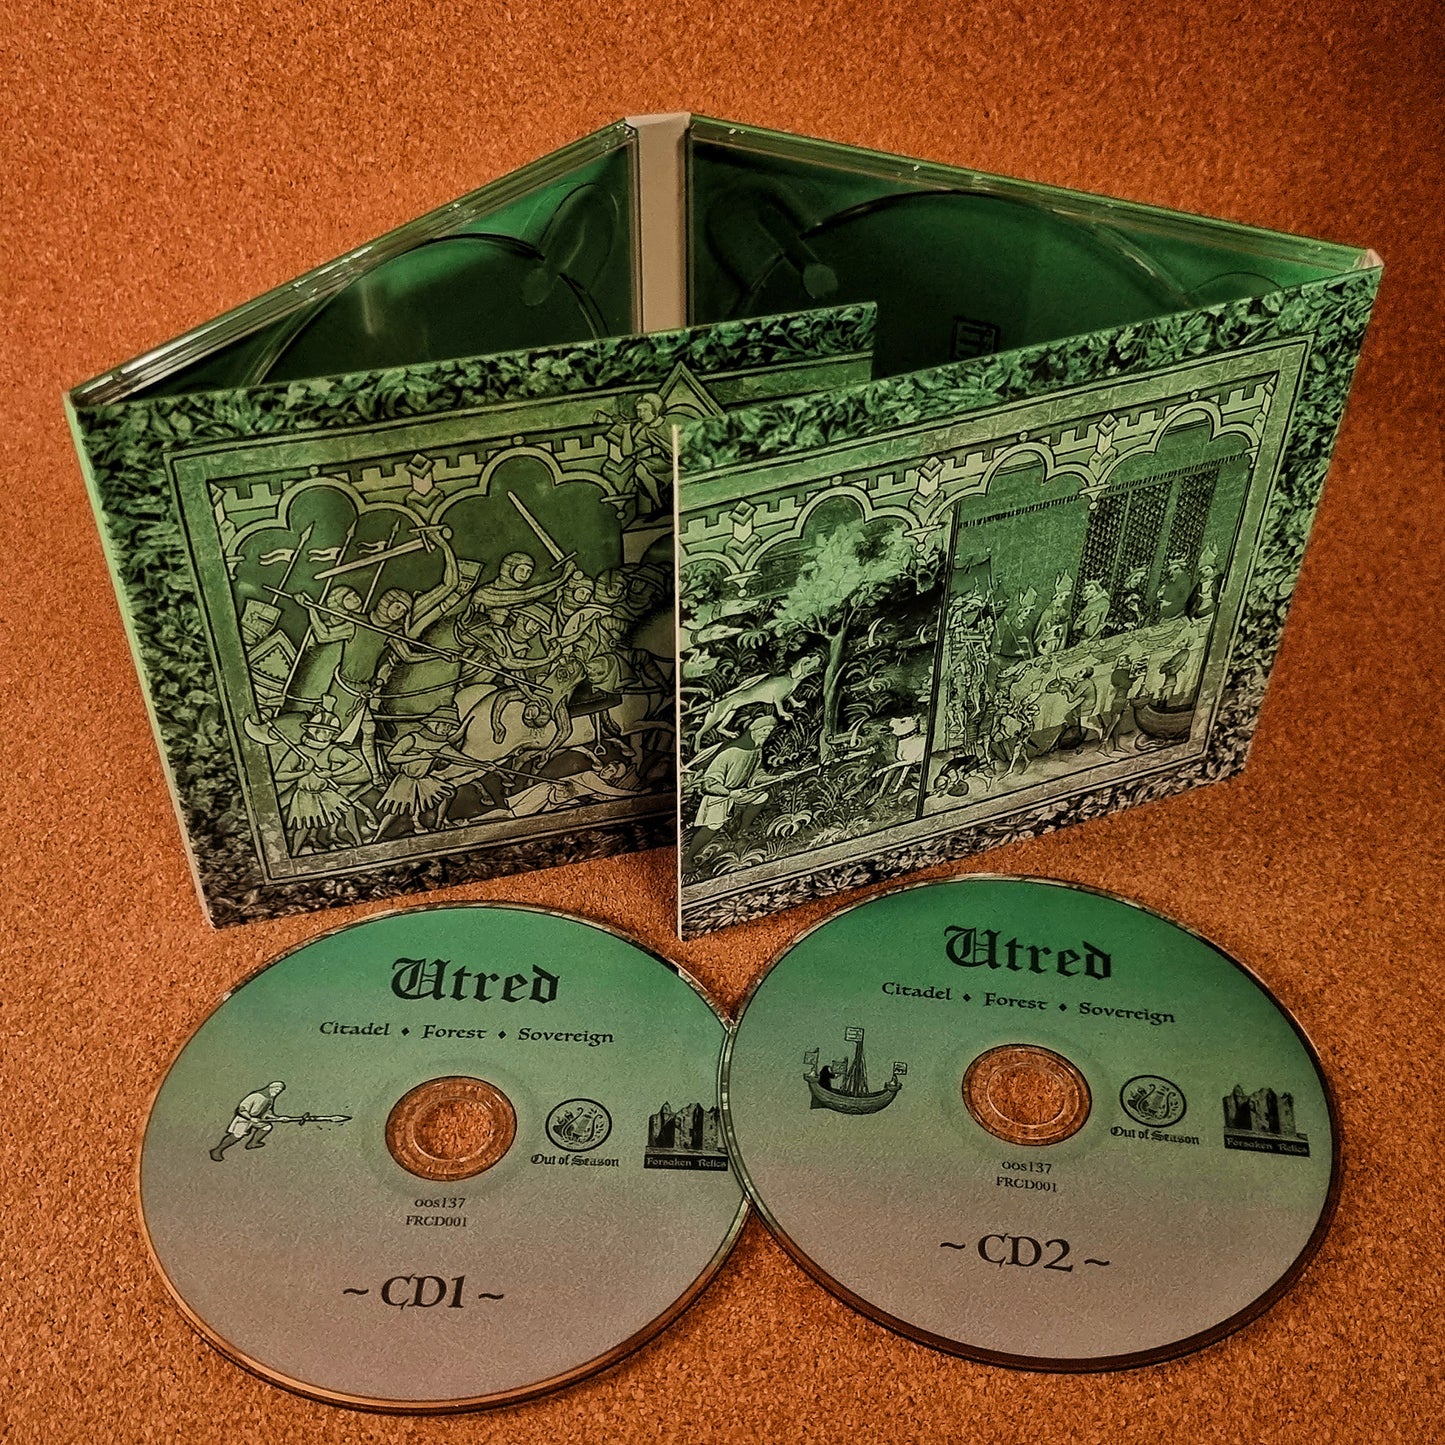 Utred - Citadel ◊ Forest ◊ Sovereign 2xCD digipak